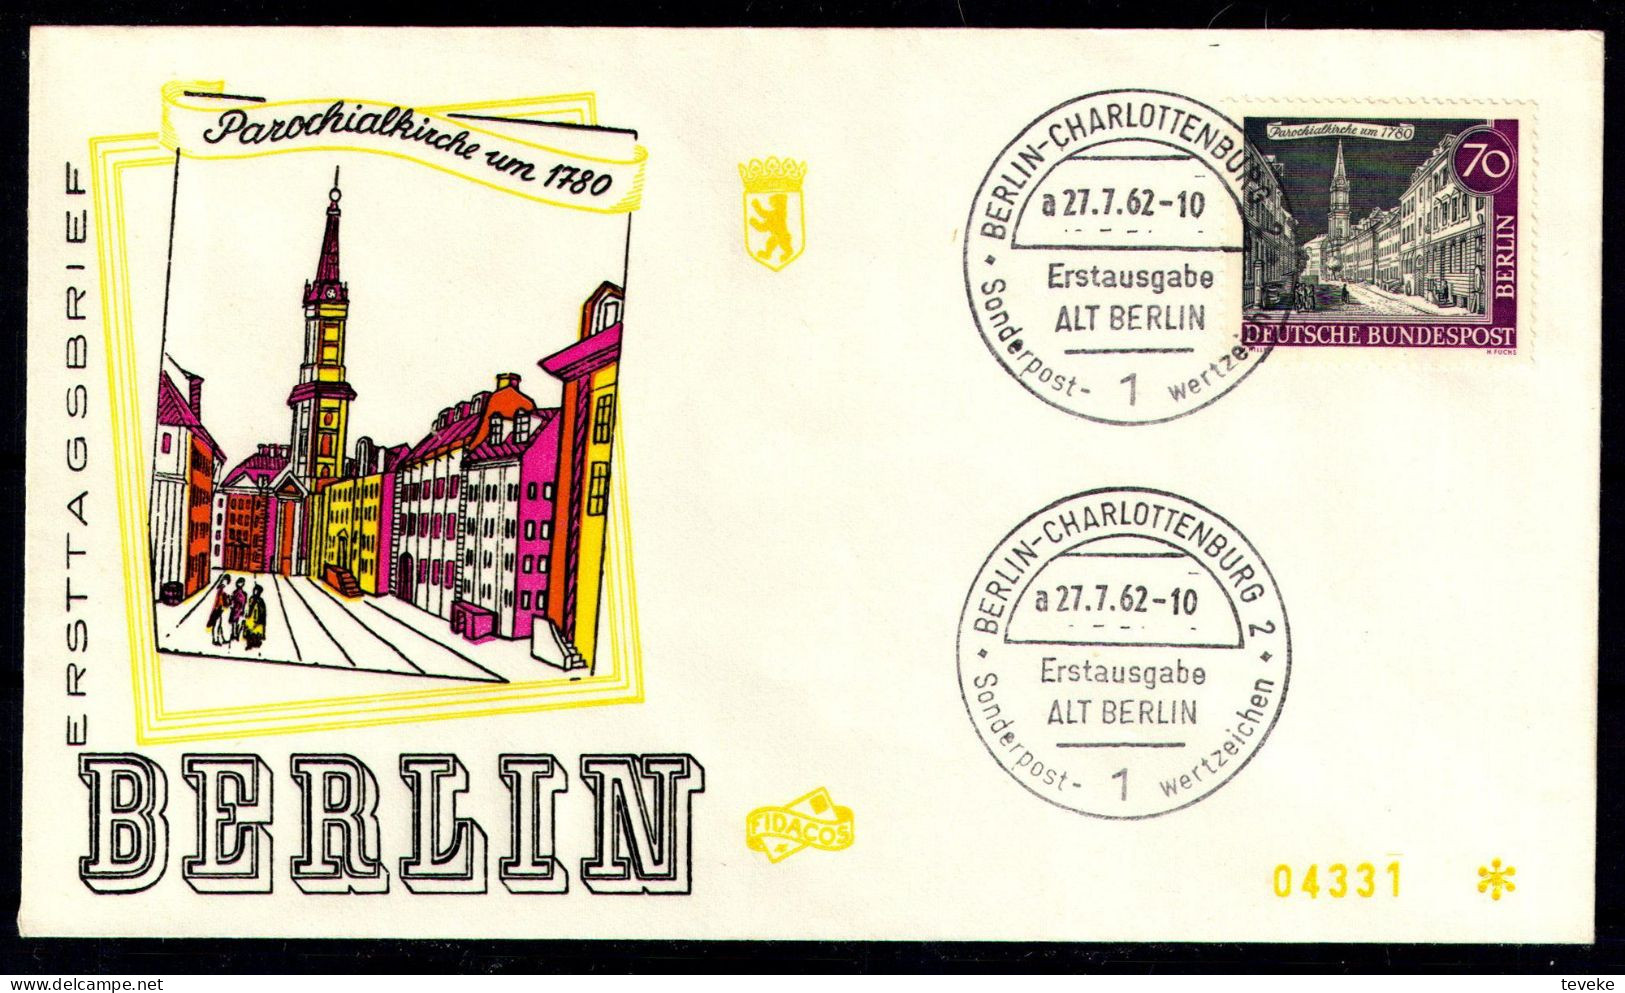 BERLIN 1962 - Michel Nr. 226 - FDC - Alt Berlin - Parochialkirche - 1948-1970